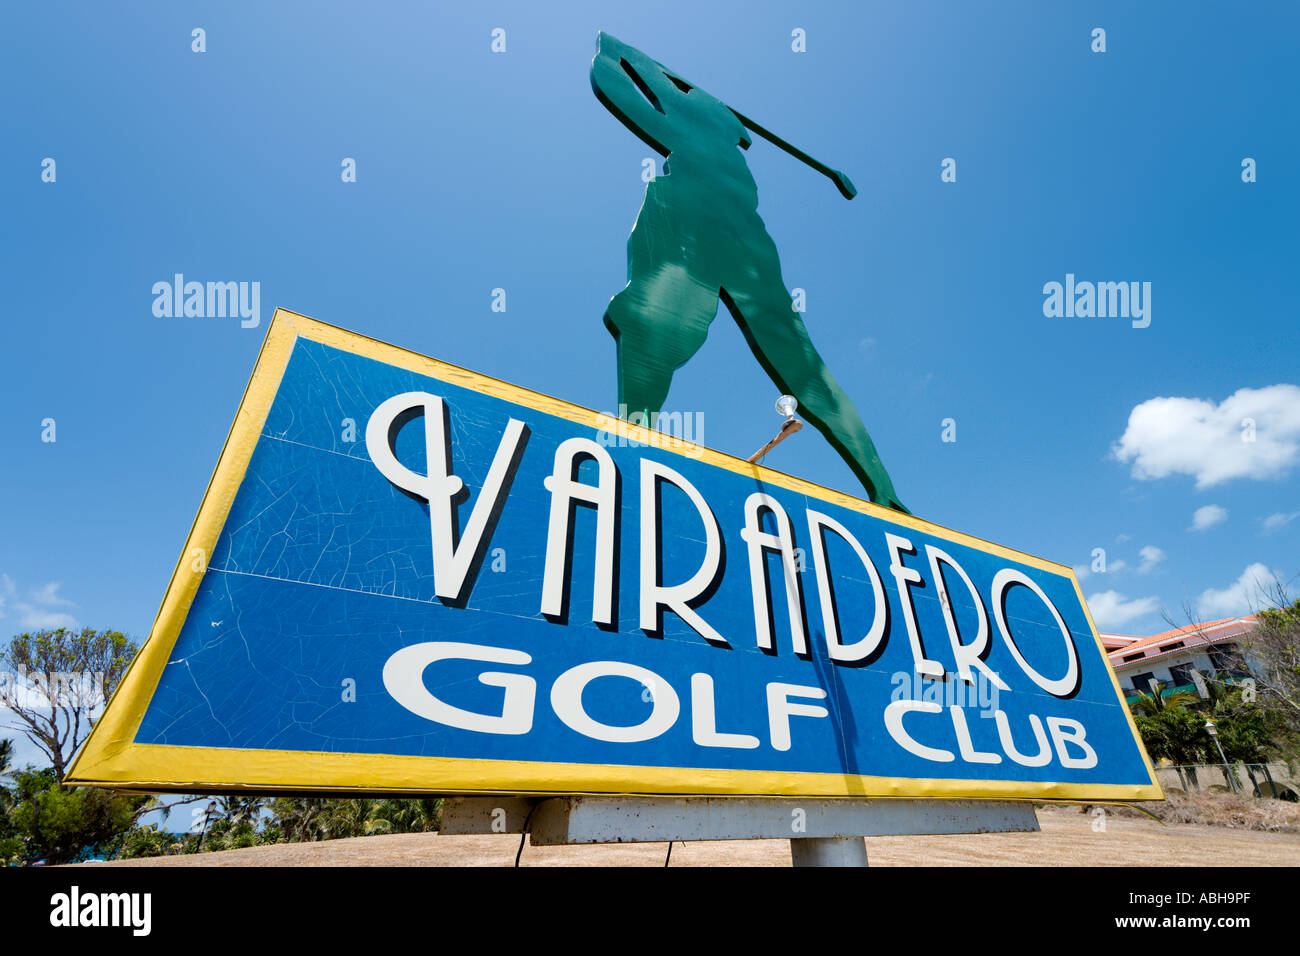 Melden Sie sich für die Varadero Golf Club, Varadero, Kuba Stockfoto